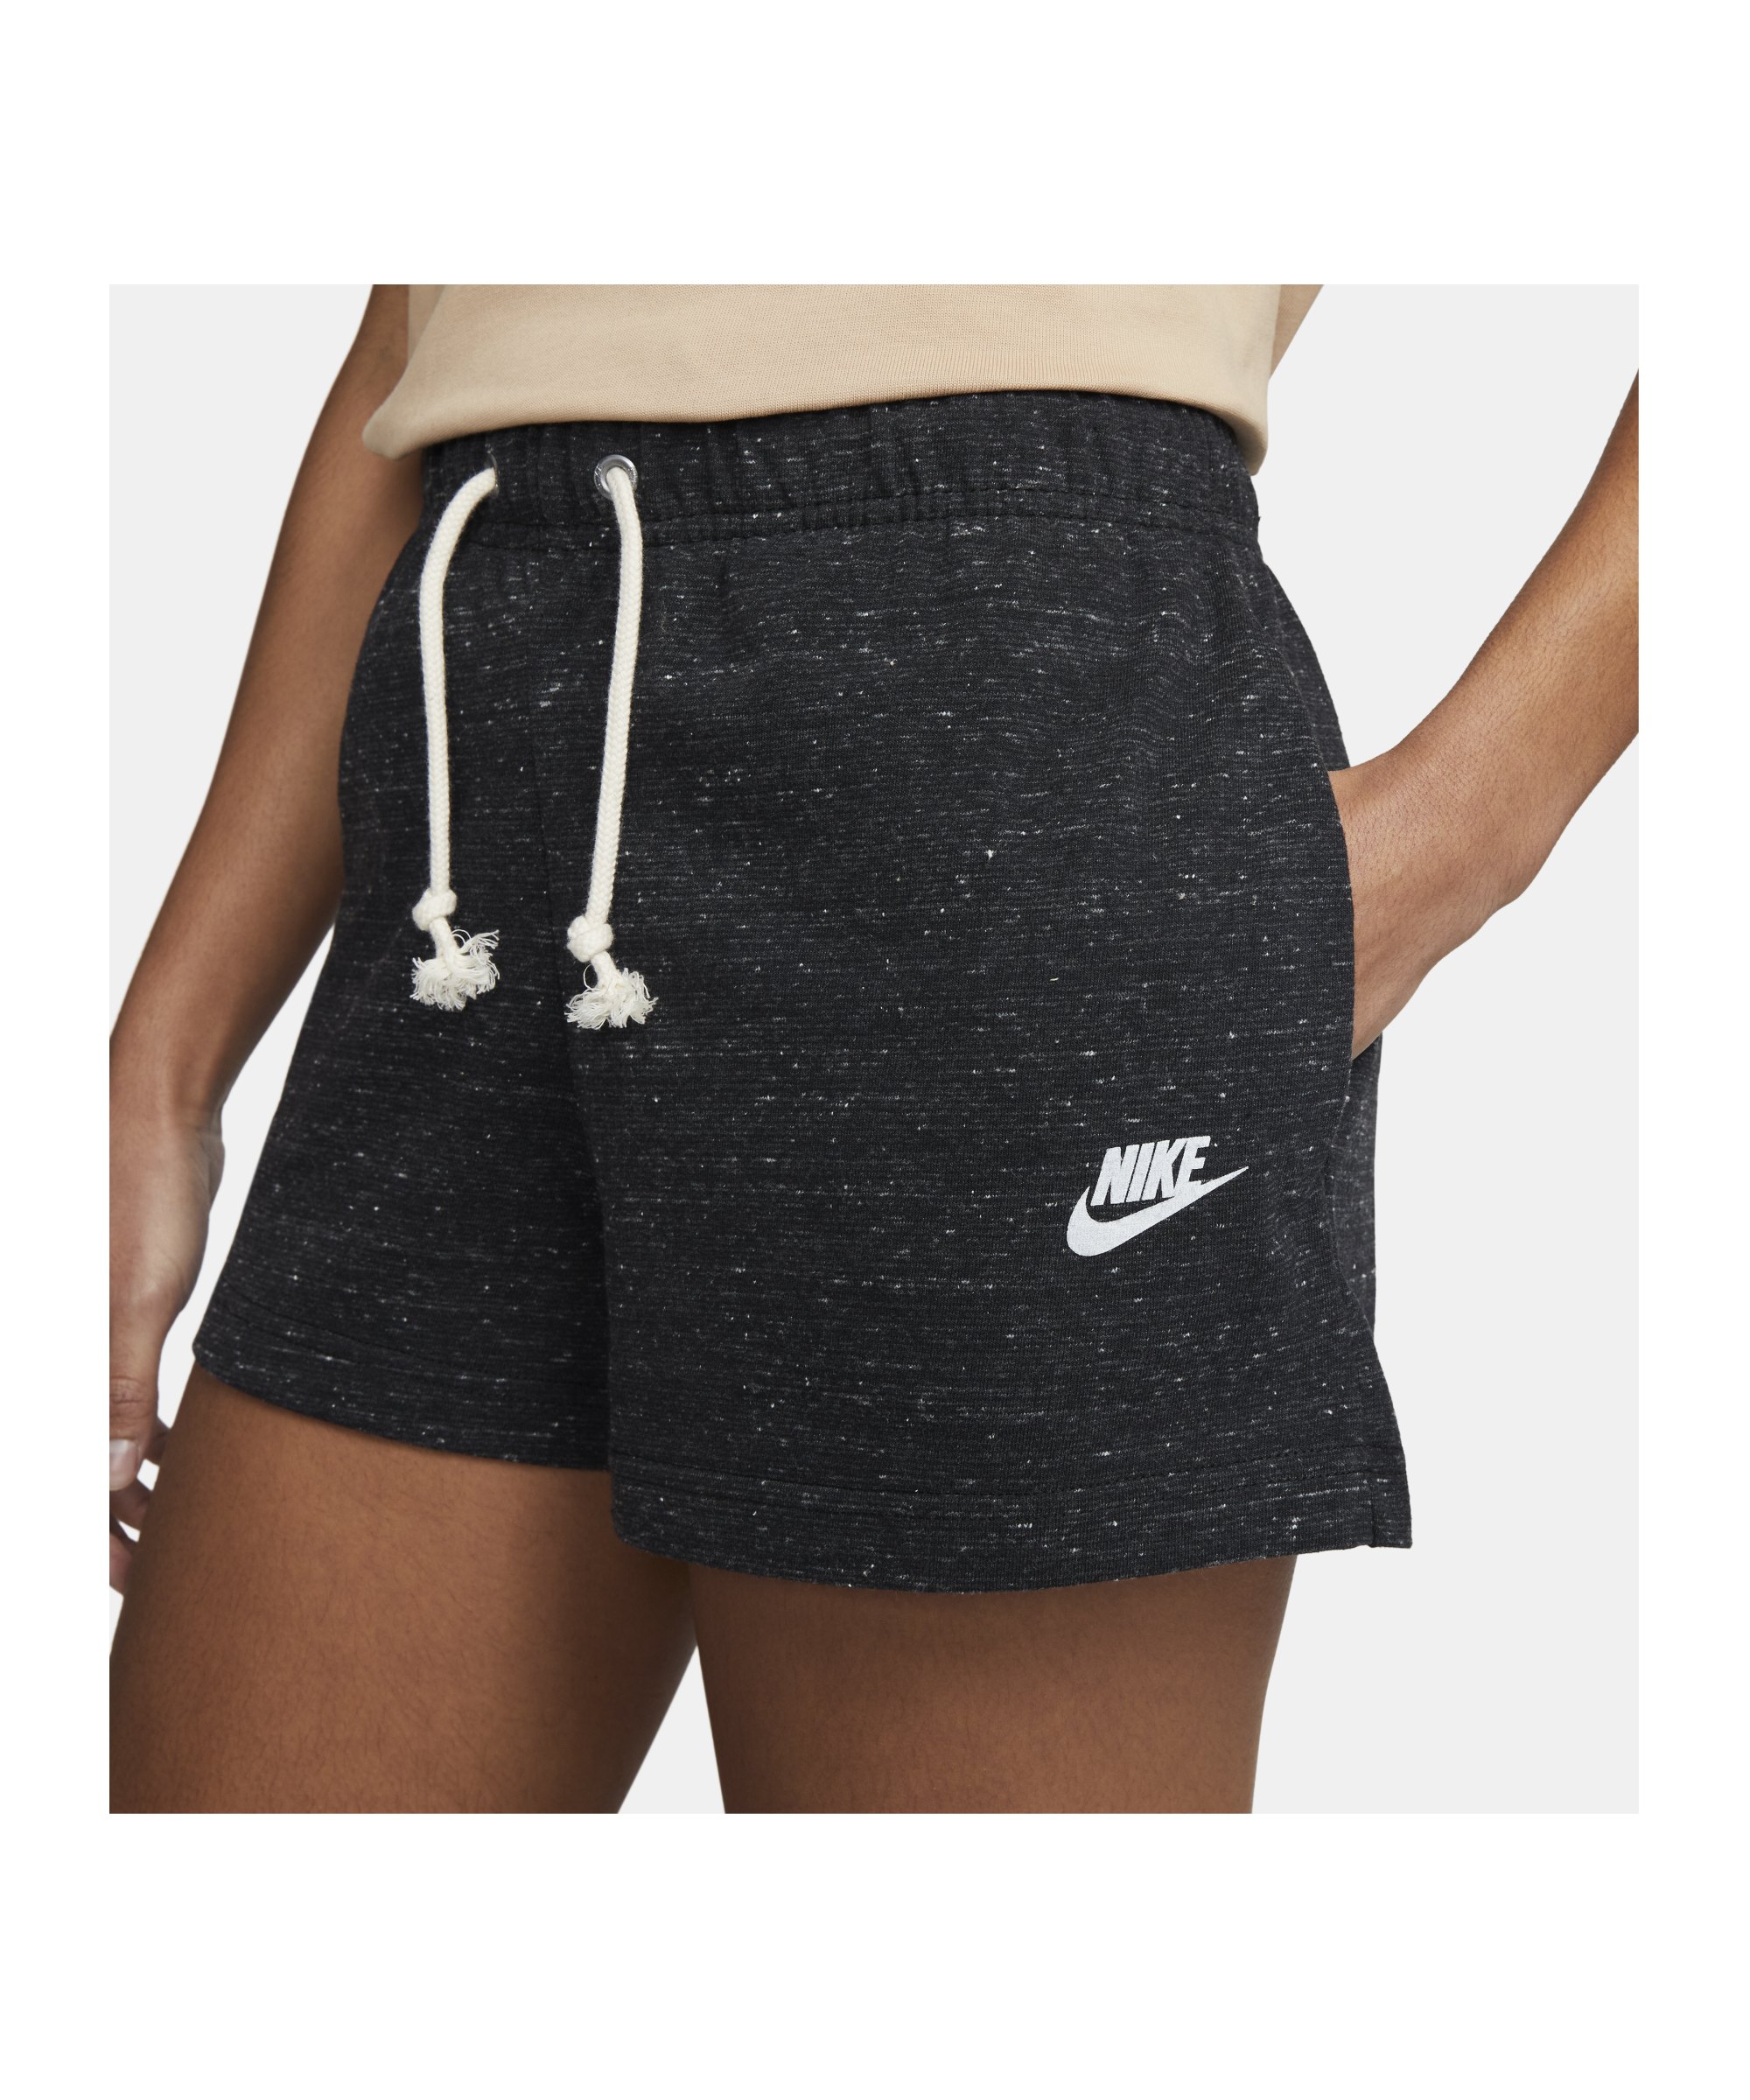 Nike Gym Vintage Short Damen Schwarz Weiss F010 - schwarz